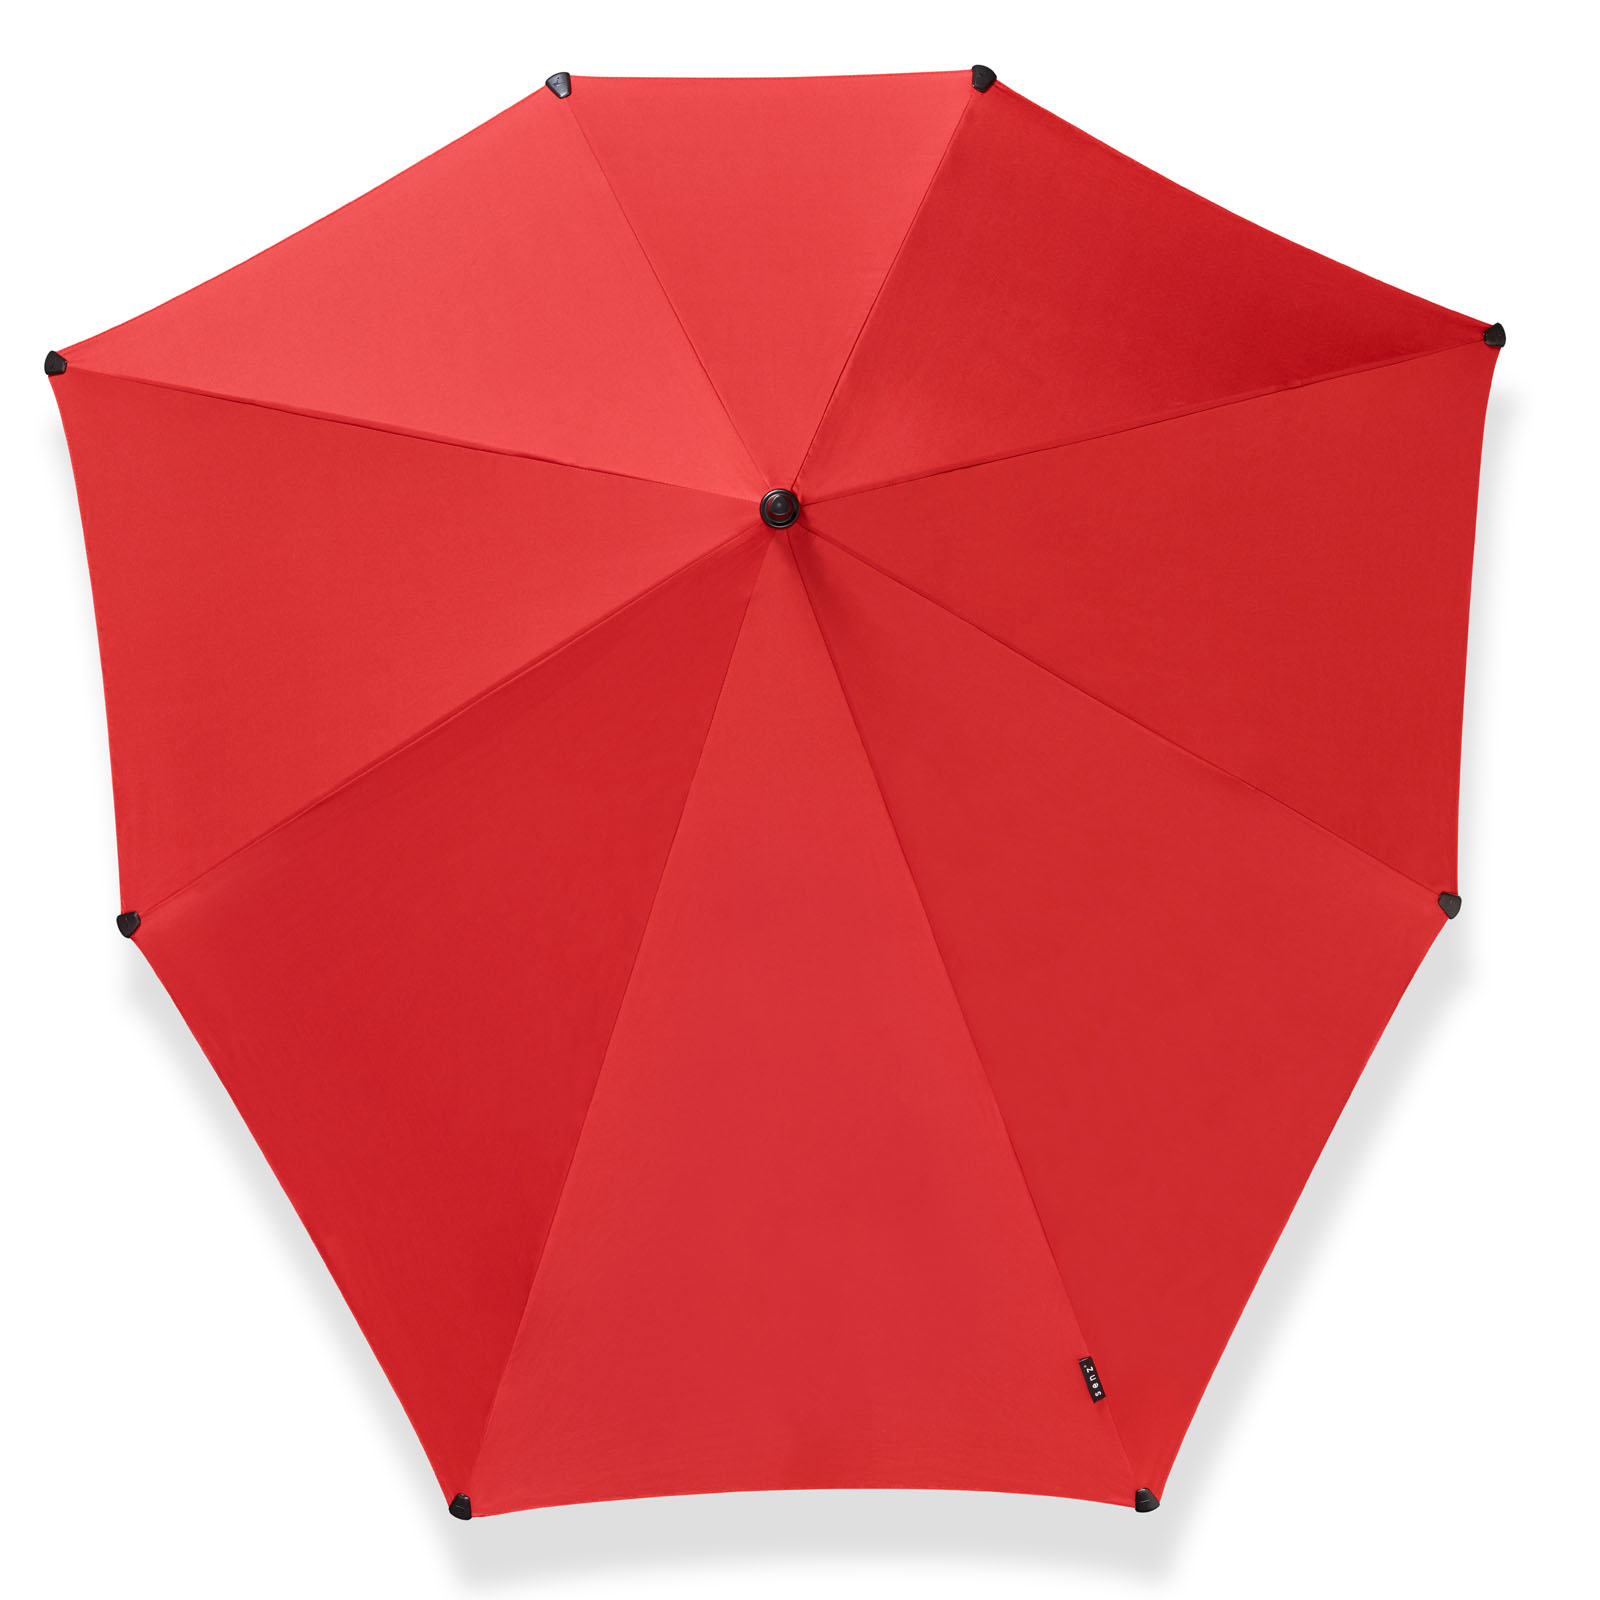 Anoi Veroveren Derbevilletest Rode lange paraplu XXL kopen? senz° XXL passion red